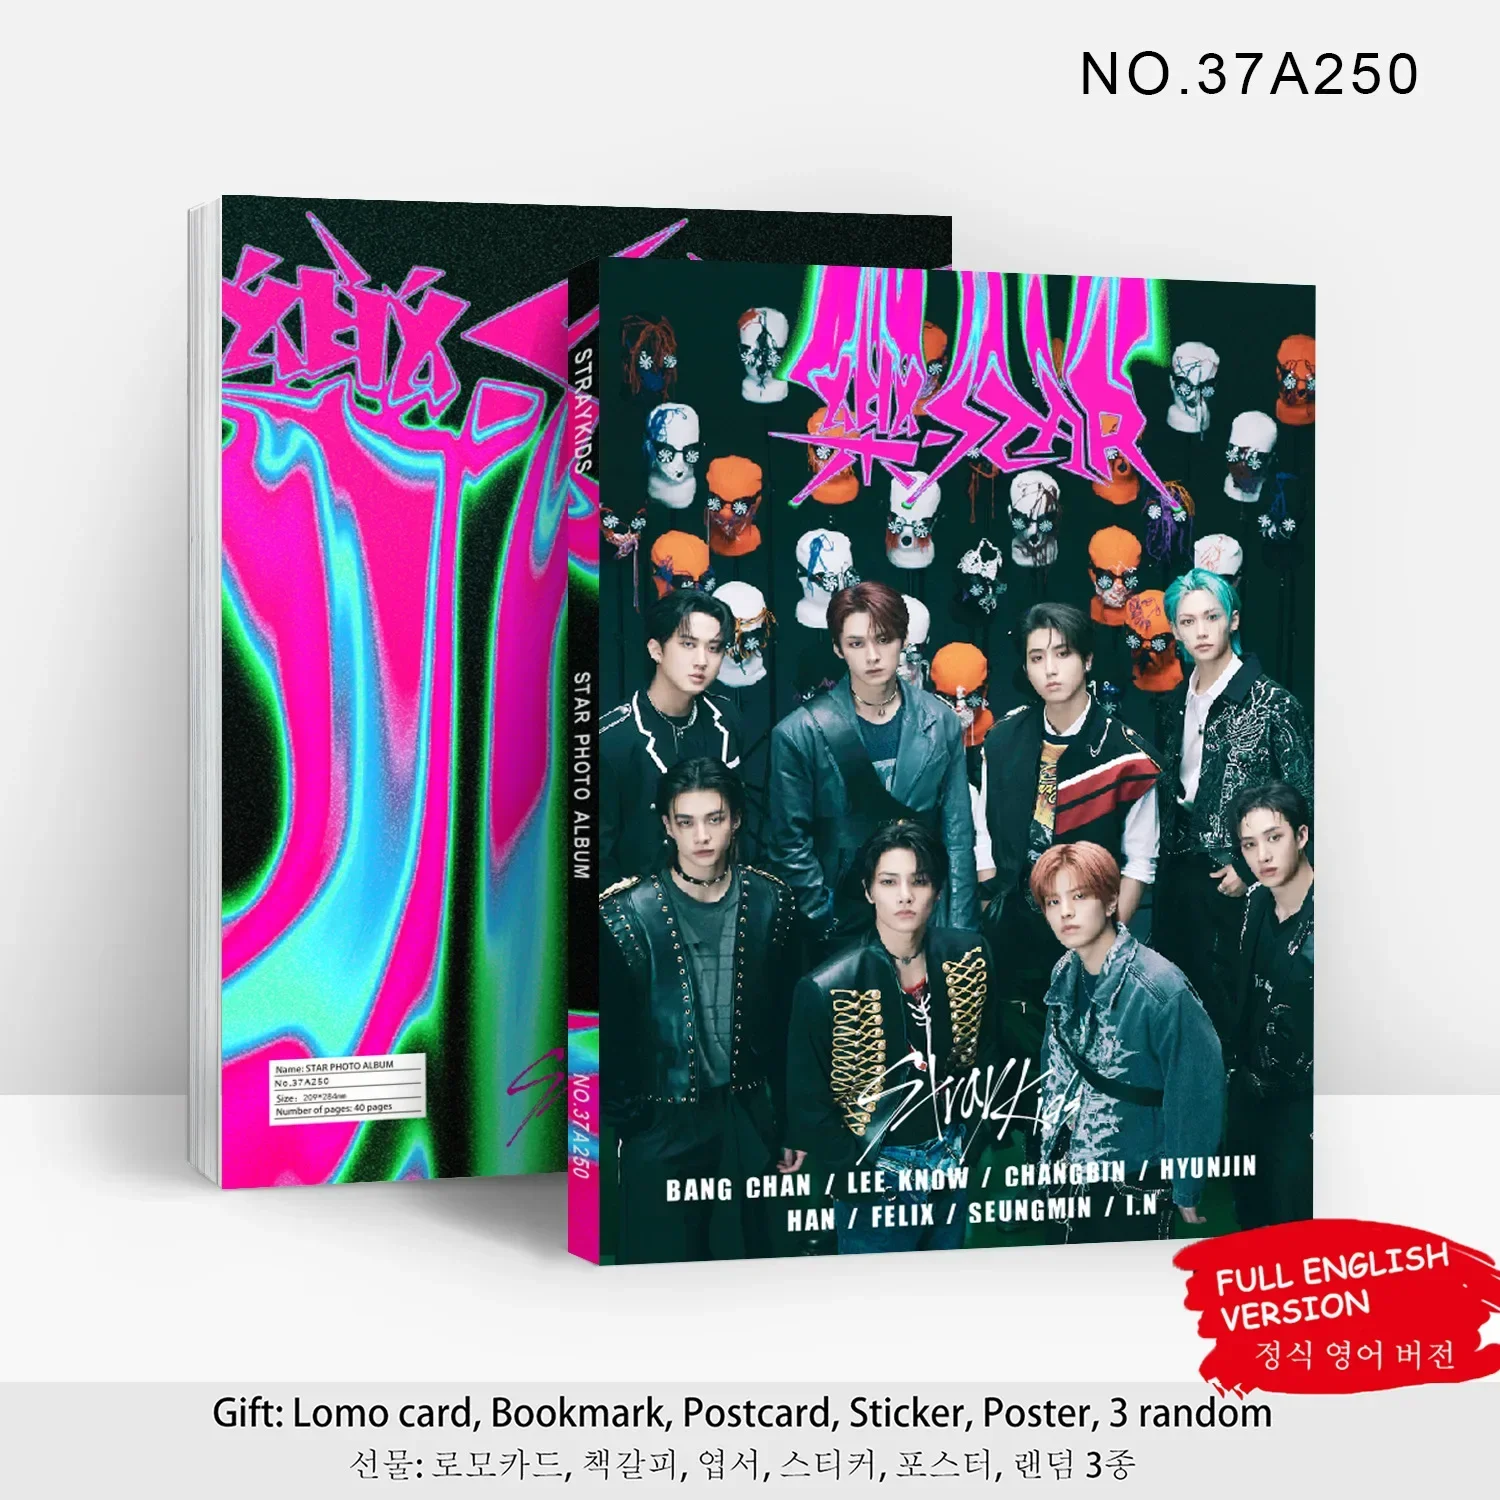 

Kpop Stray детский новый альбом рок-звезда 5-звездный портрет HD Фотогалерея наклейка плакат Закладка карточка StrayKids веер коллекционный подарок